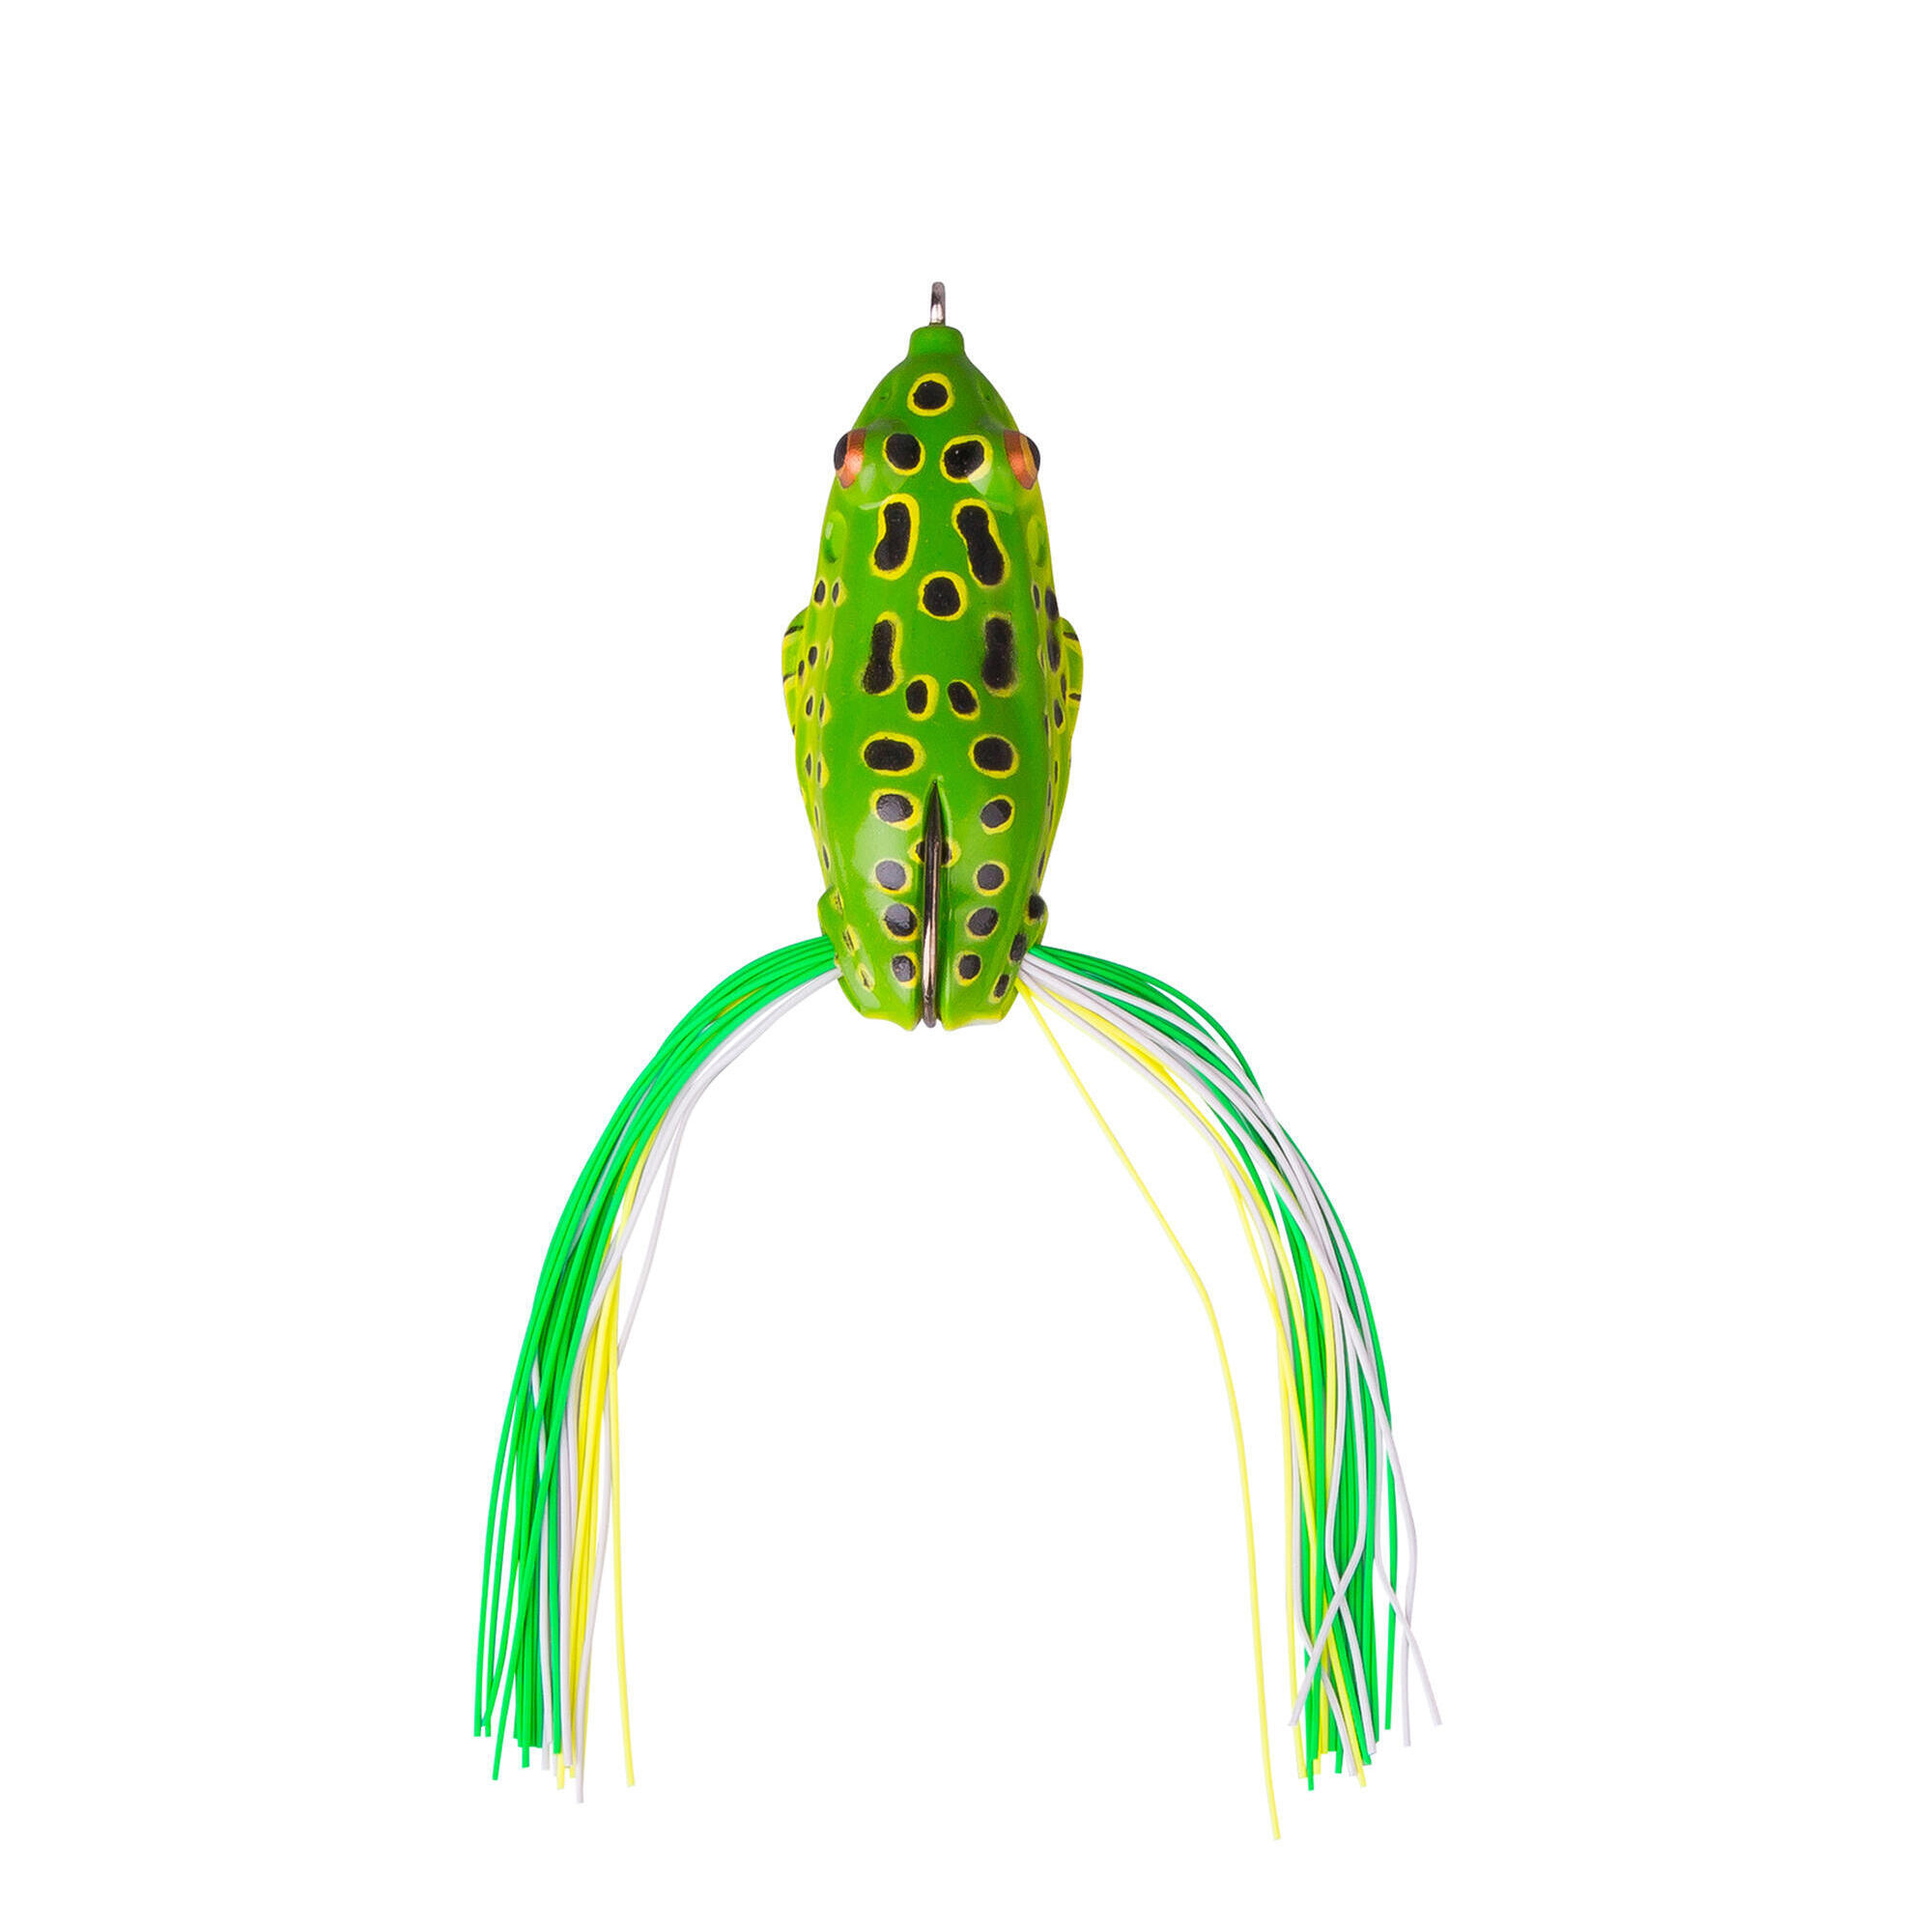 Nălucă Pescuit 3D Skirt Frog 7.5 cm La Oferta Online decathlon imagine La Oferta Online